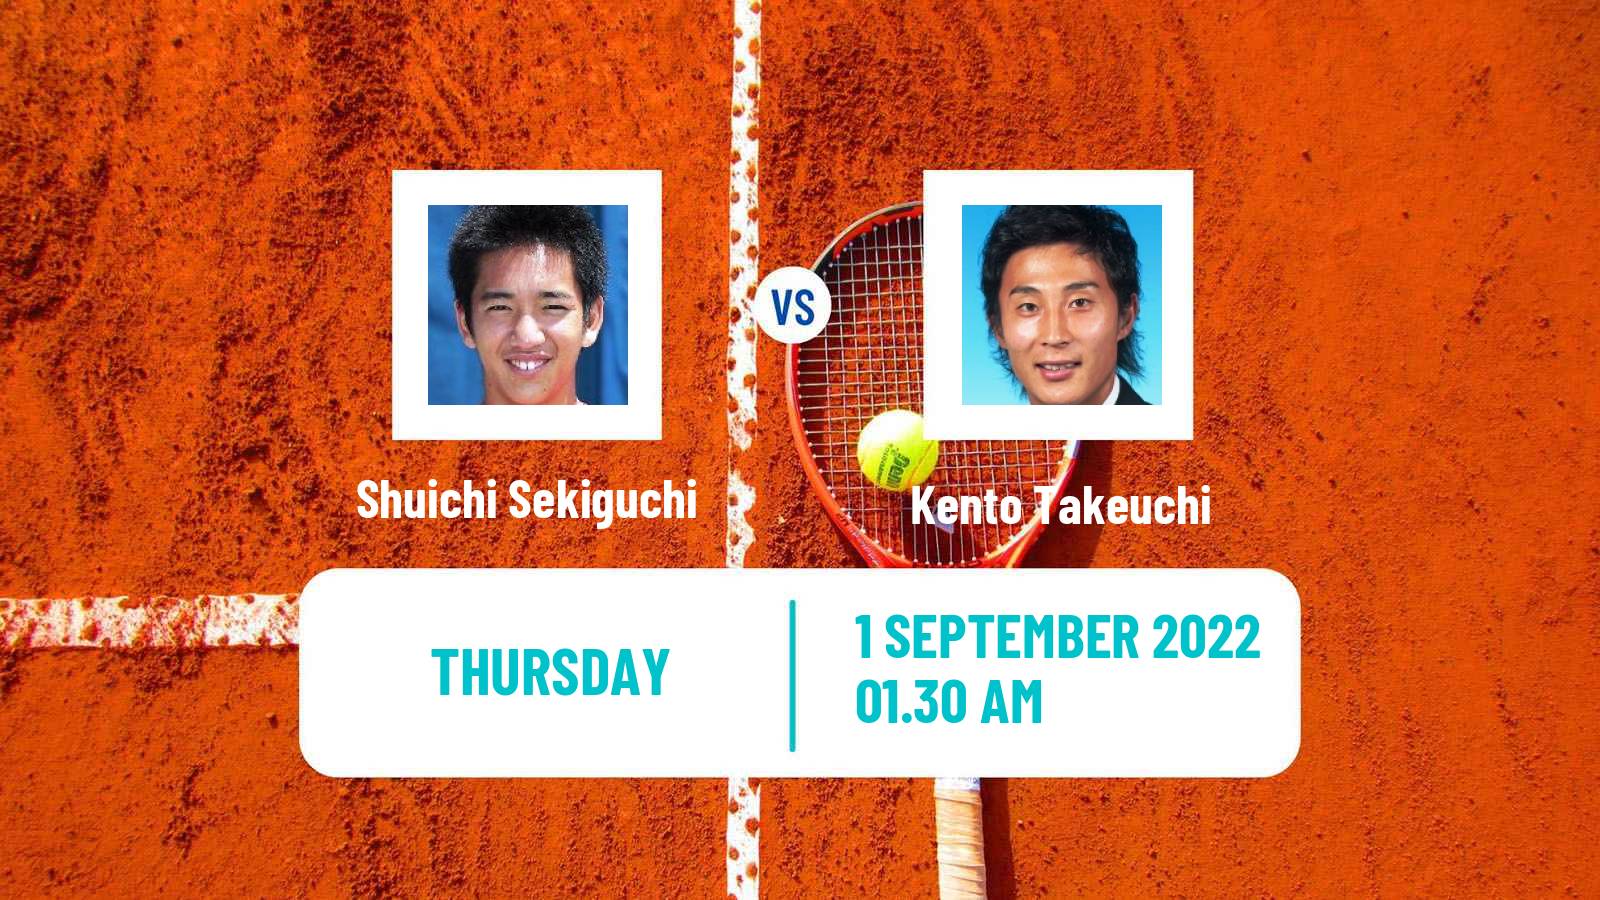 Tennis ITF Tournaments Shuichi Sekiguchi - Kento Takeuchi